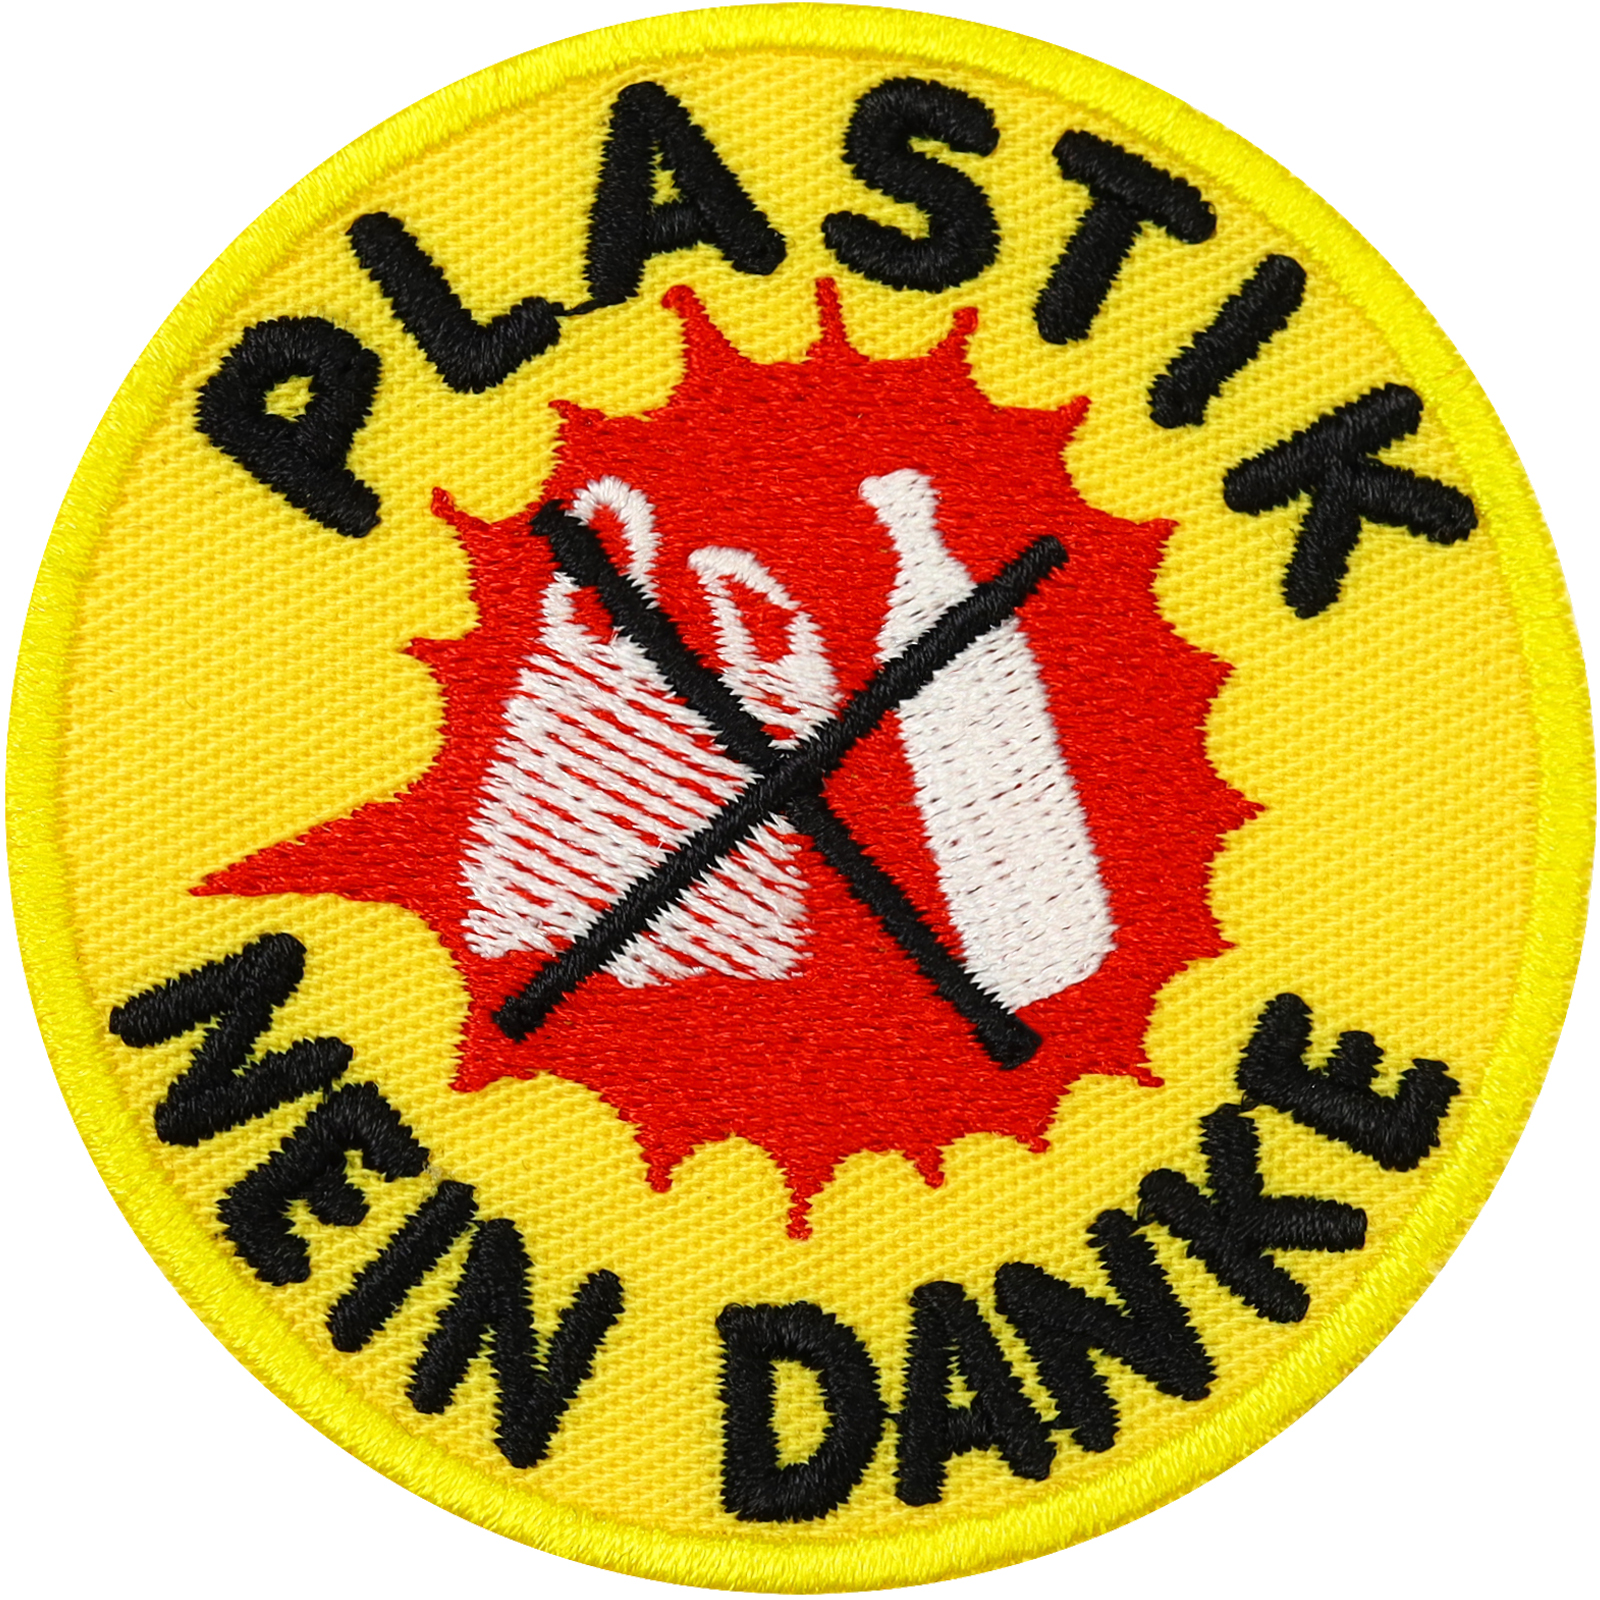 Plastik - Nein Danke - Patch